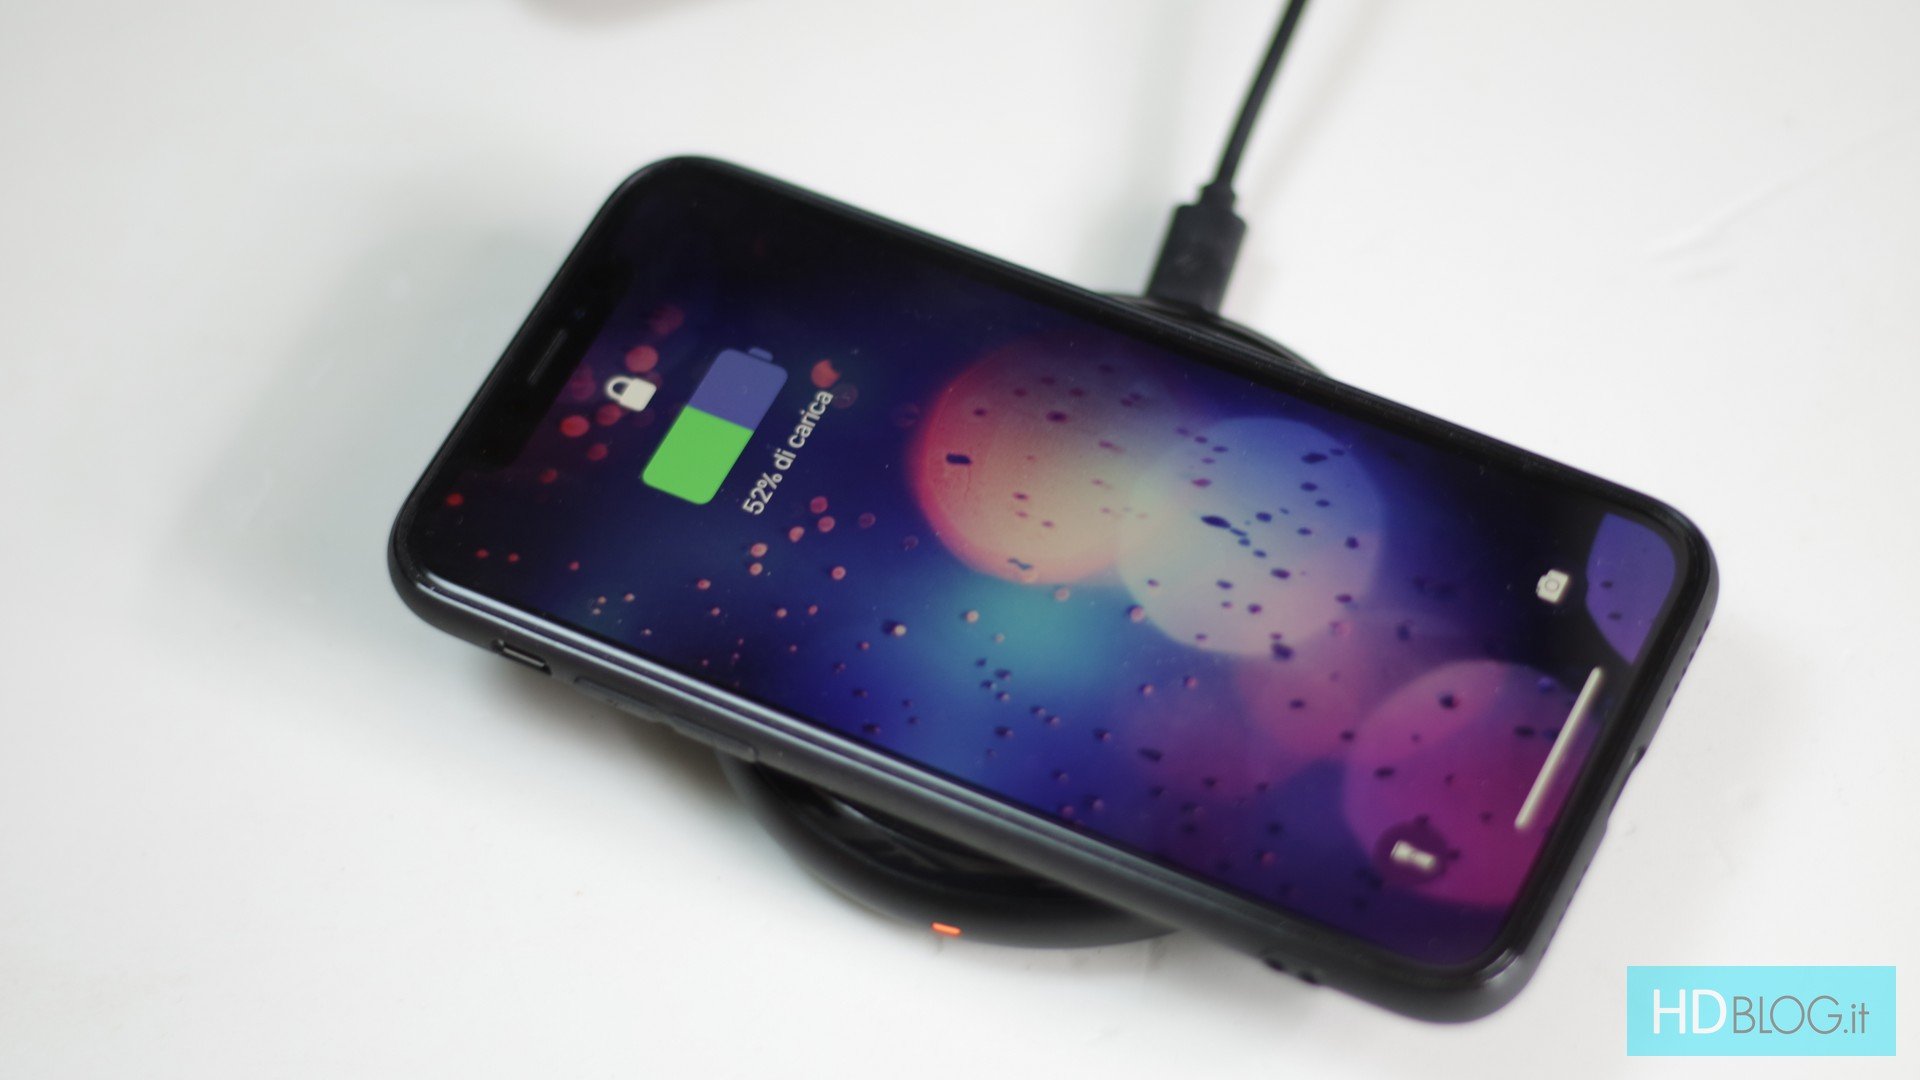 8 S7 Edge / LG G6 Wireless universale caricabatteria da auto supporto con Qi funzione di ricarica per Apple iPhone X G4 / Microsoft / Motorola S8 S8+ S7 etc. 8 Plus / Samsung Galaxy Note 8 